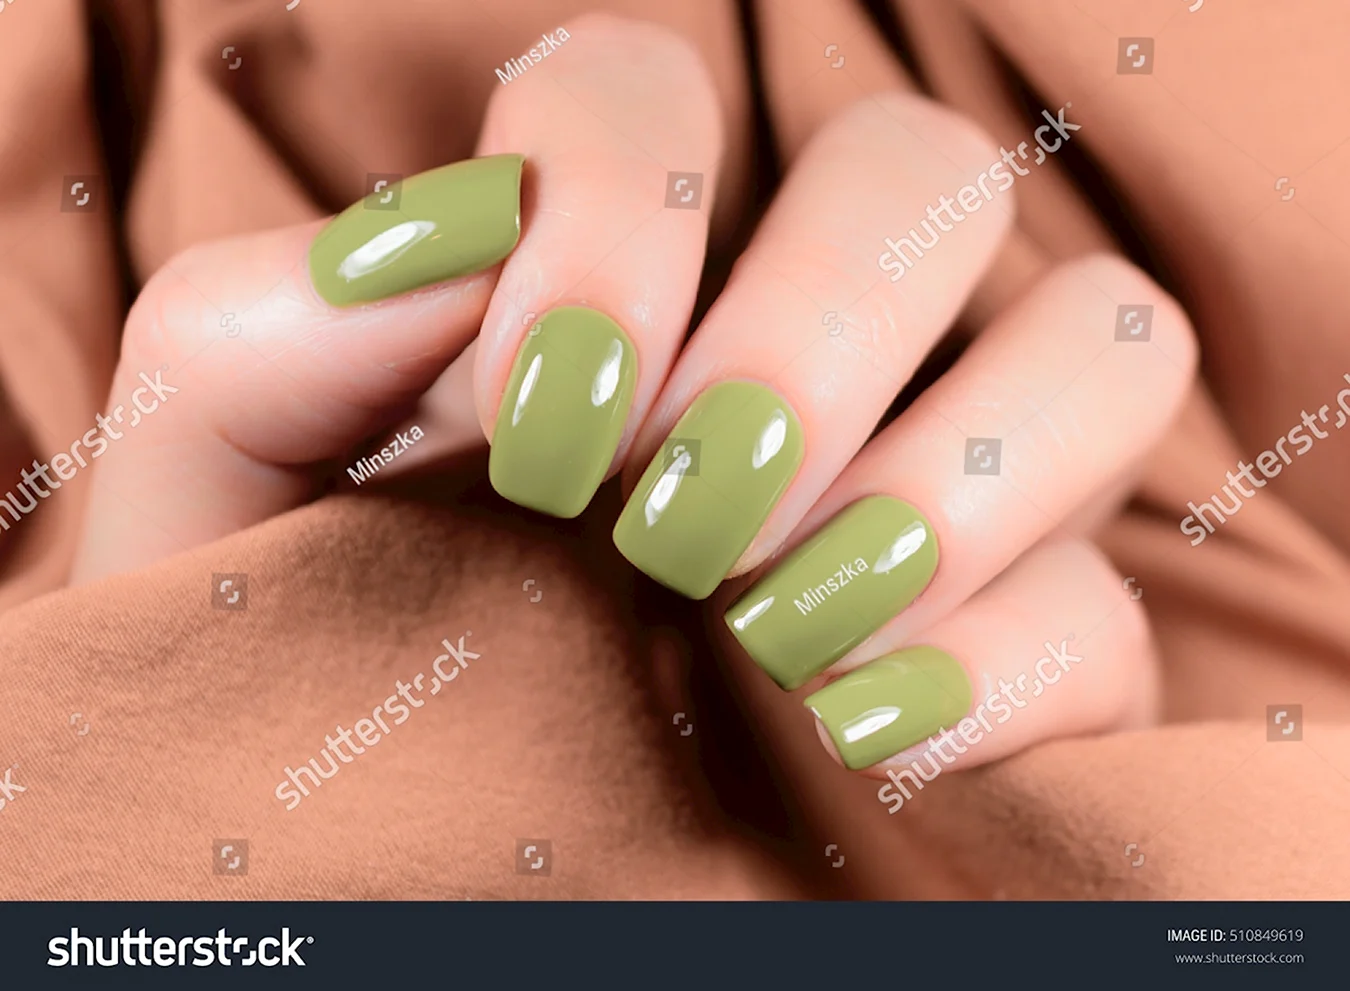 Ногти оливкового цвета